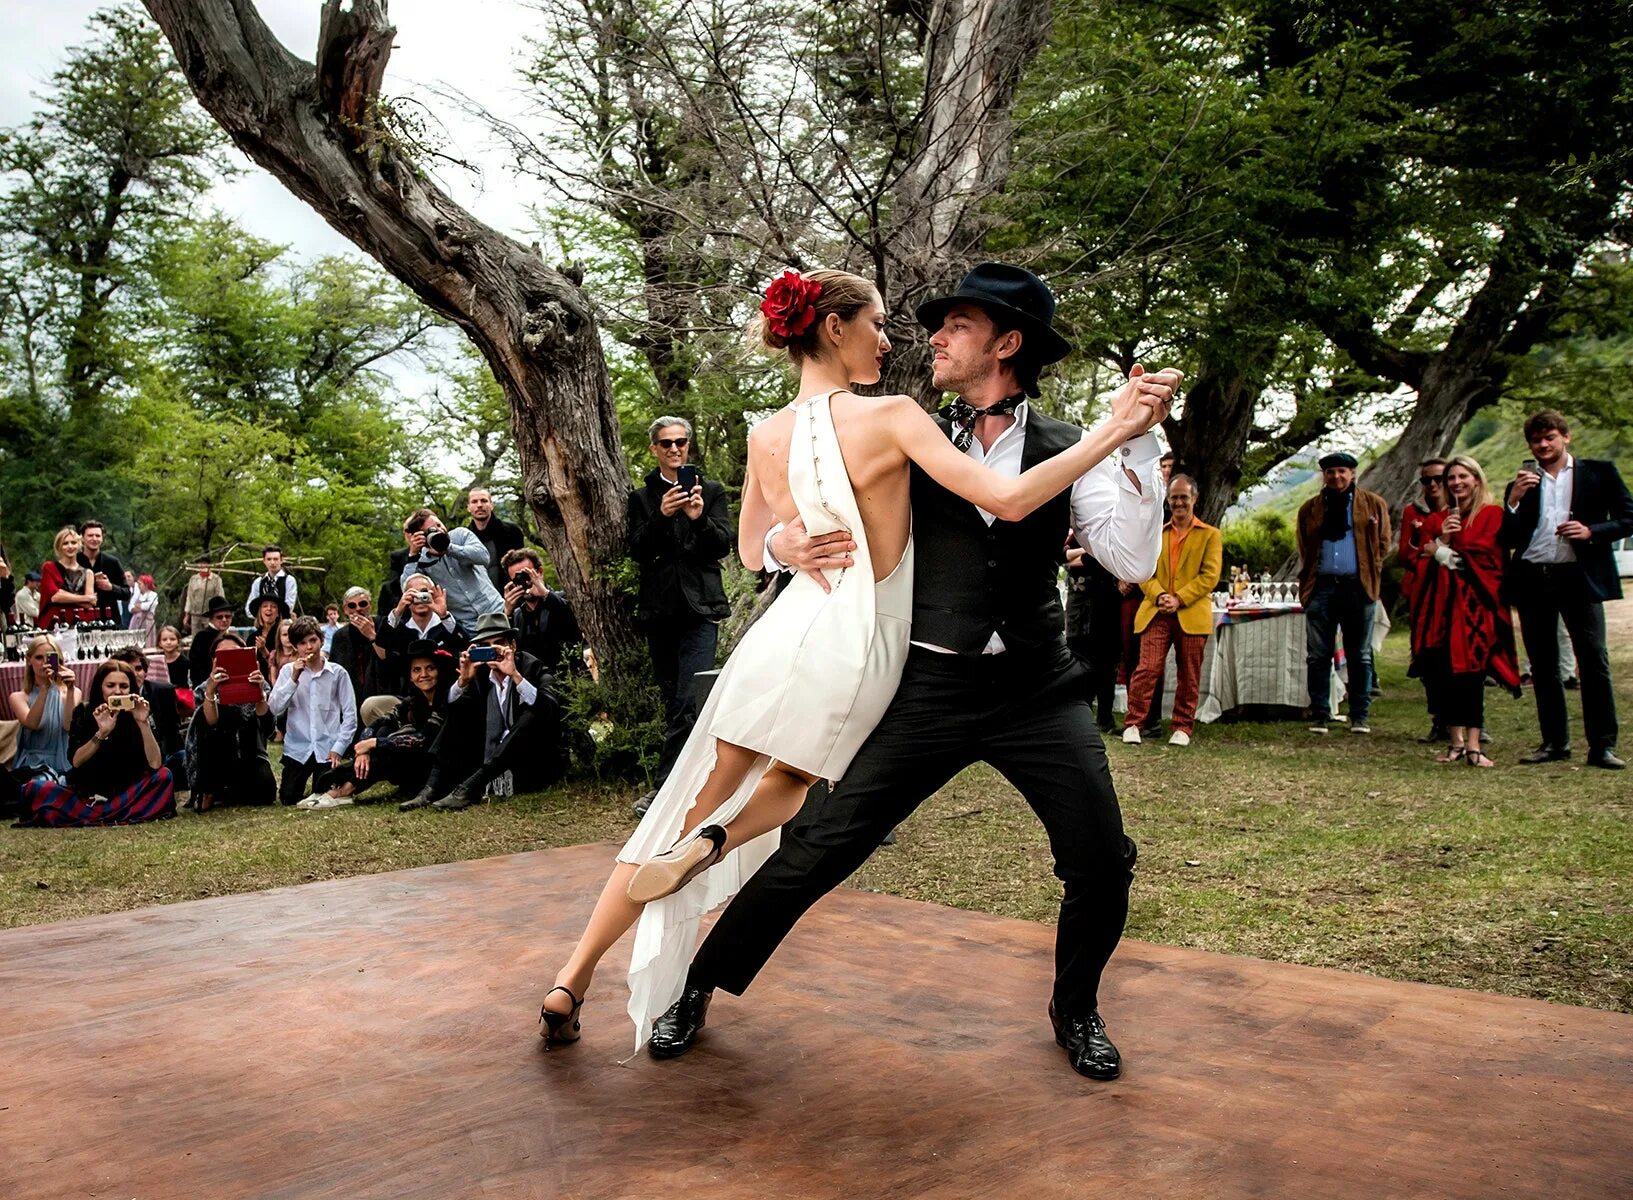 Песни под танцы на свадьбу. Свадебный танец. Танцы на свадьбе. Свадьба в стиле танго. Свадьба в испанском стиле.